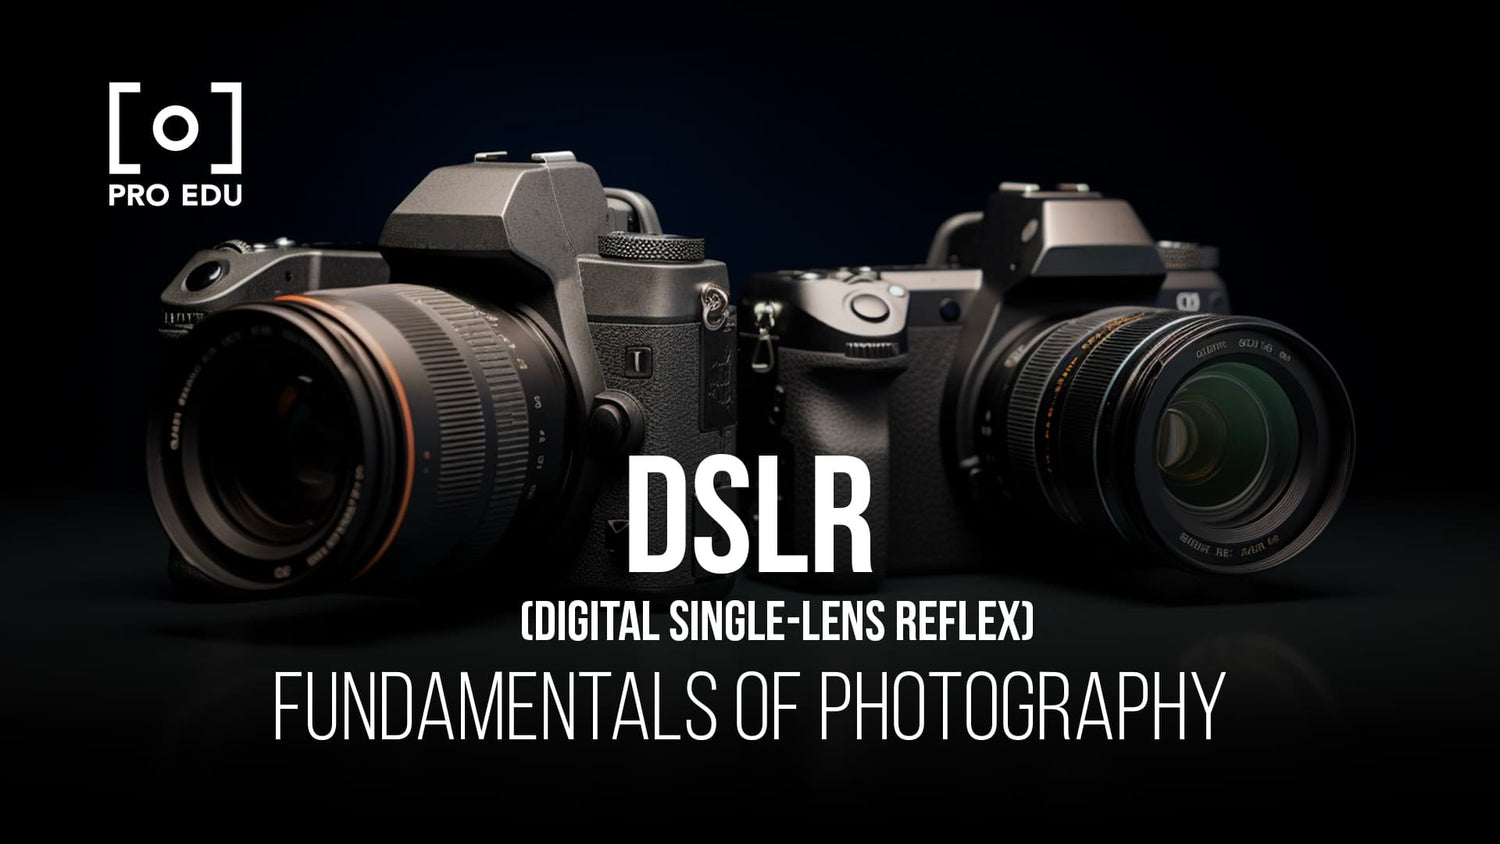 Kit de limpieza profesional para cámaras DSLR - Canon, Nikon, Pentax, Sony  - Herramientas de limpieza y accesorios